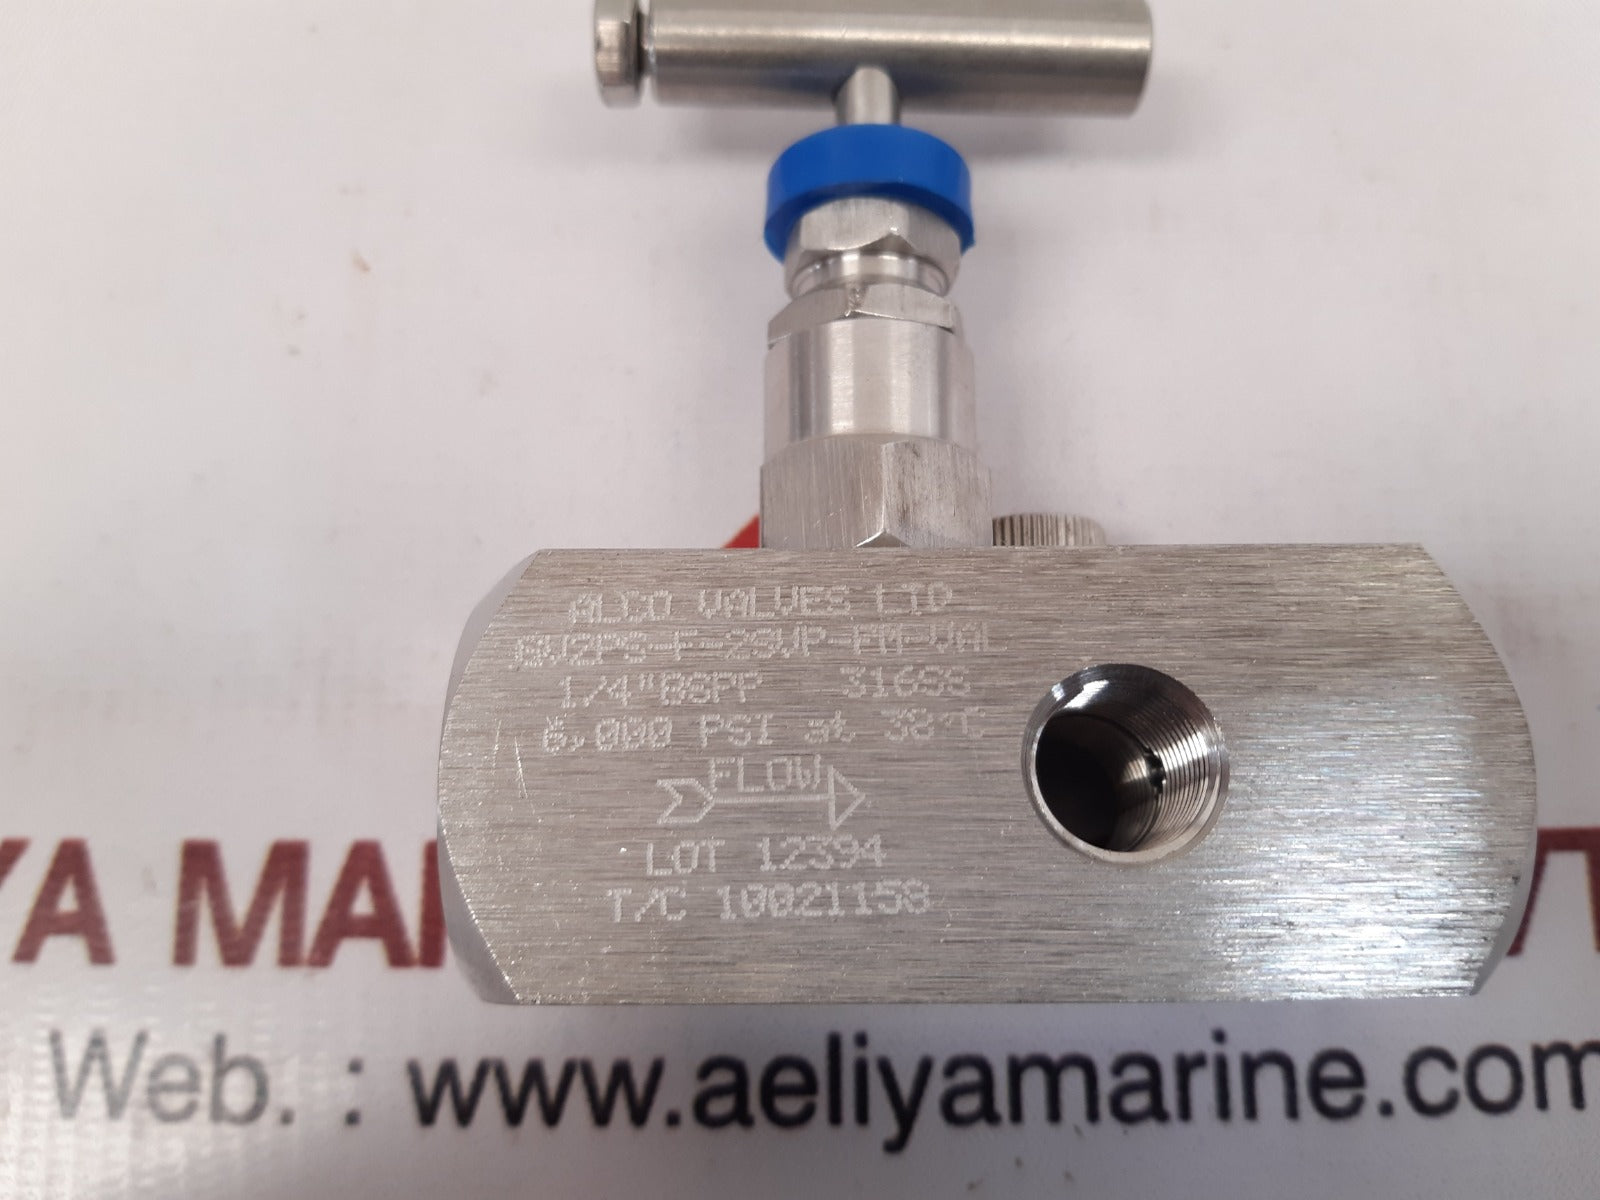 Alco valves 6v2ps-f-2svp-fm-val with nuova fima en837-1